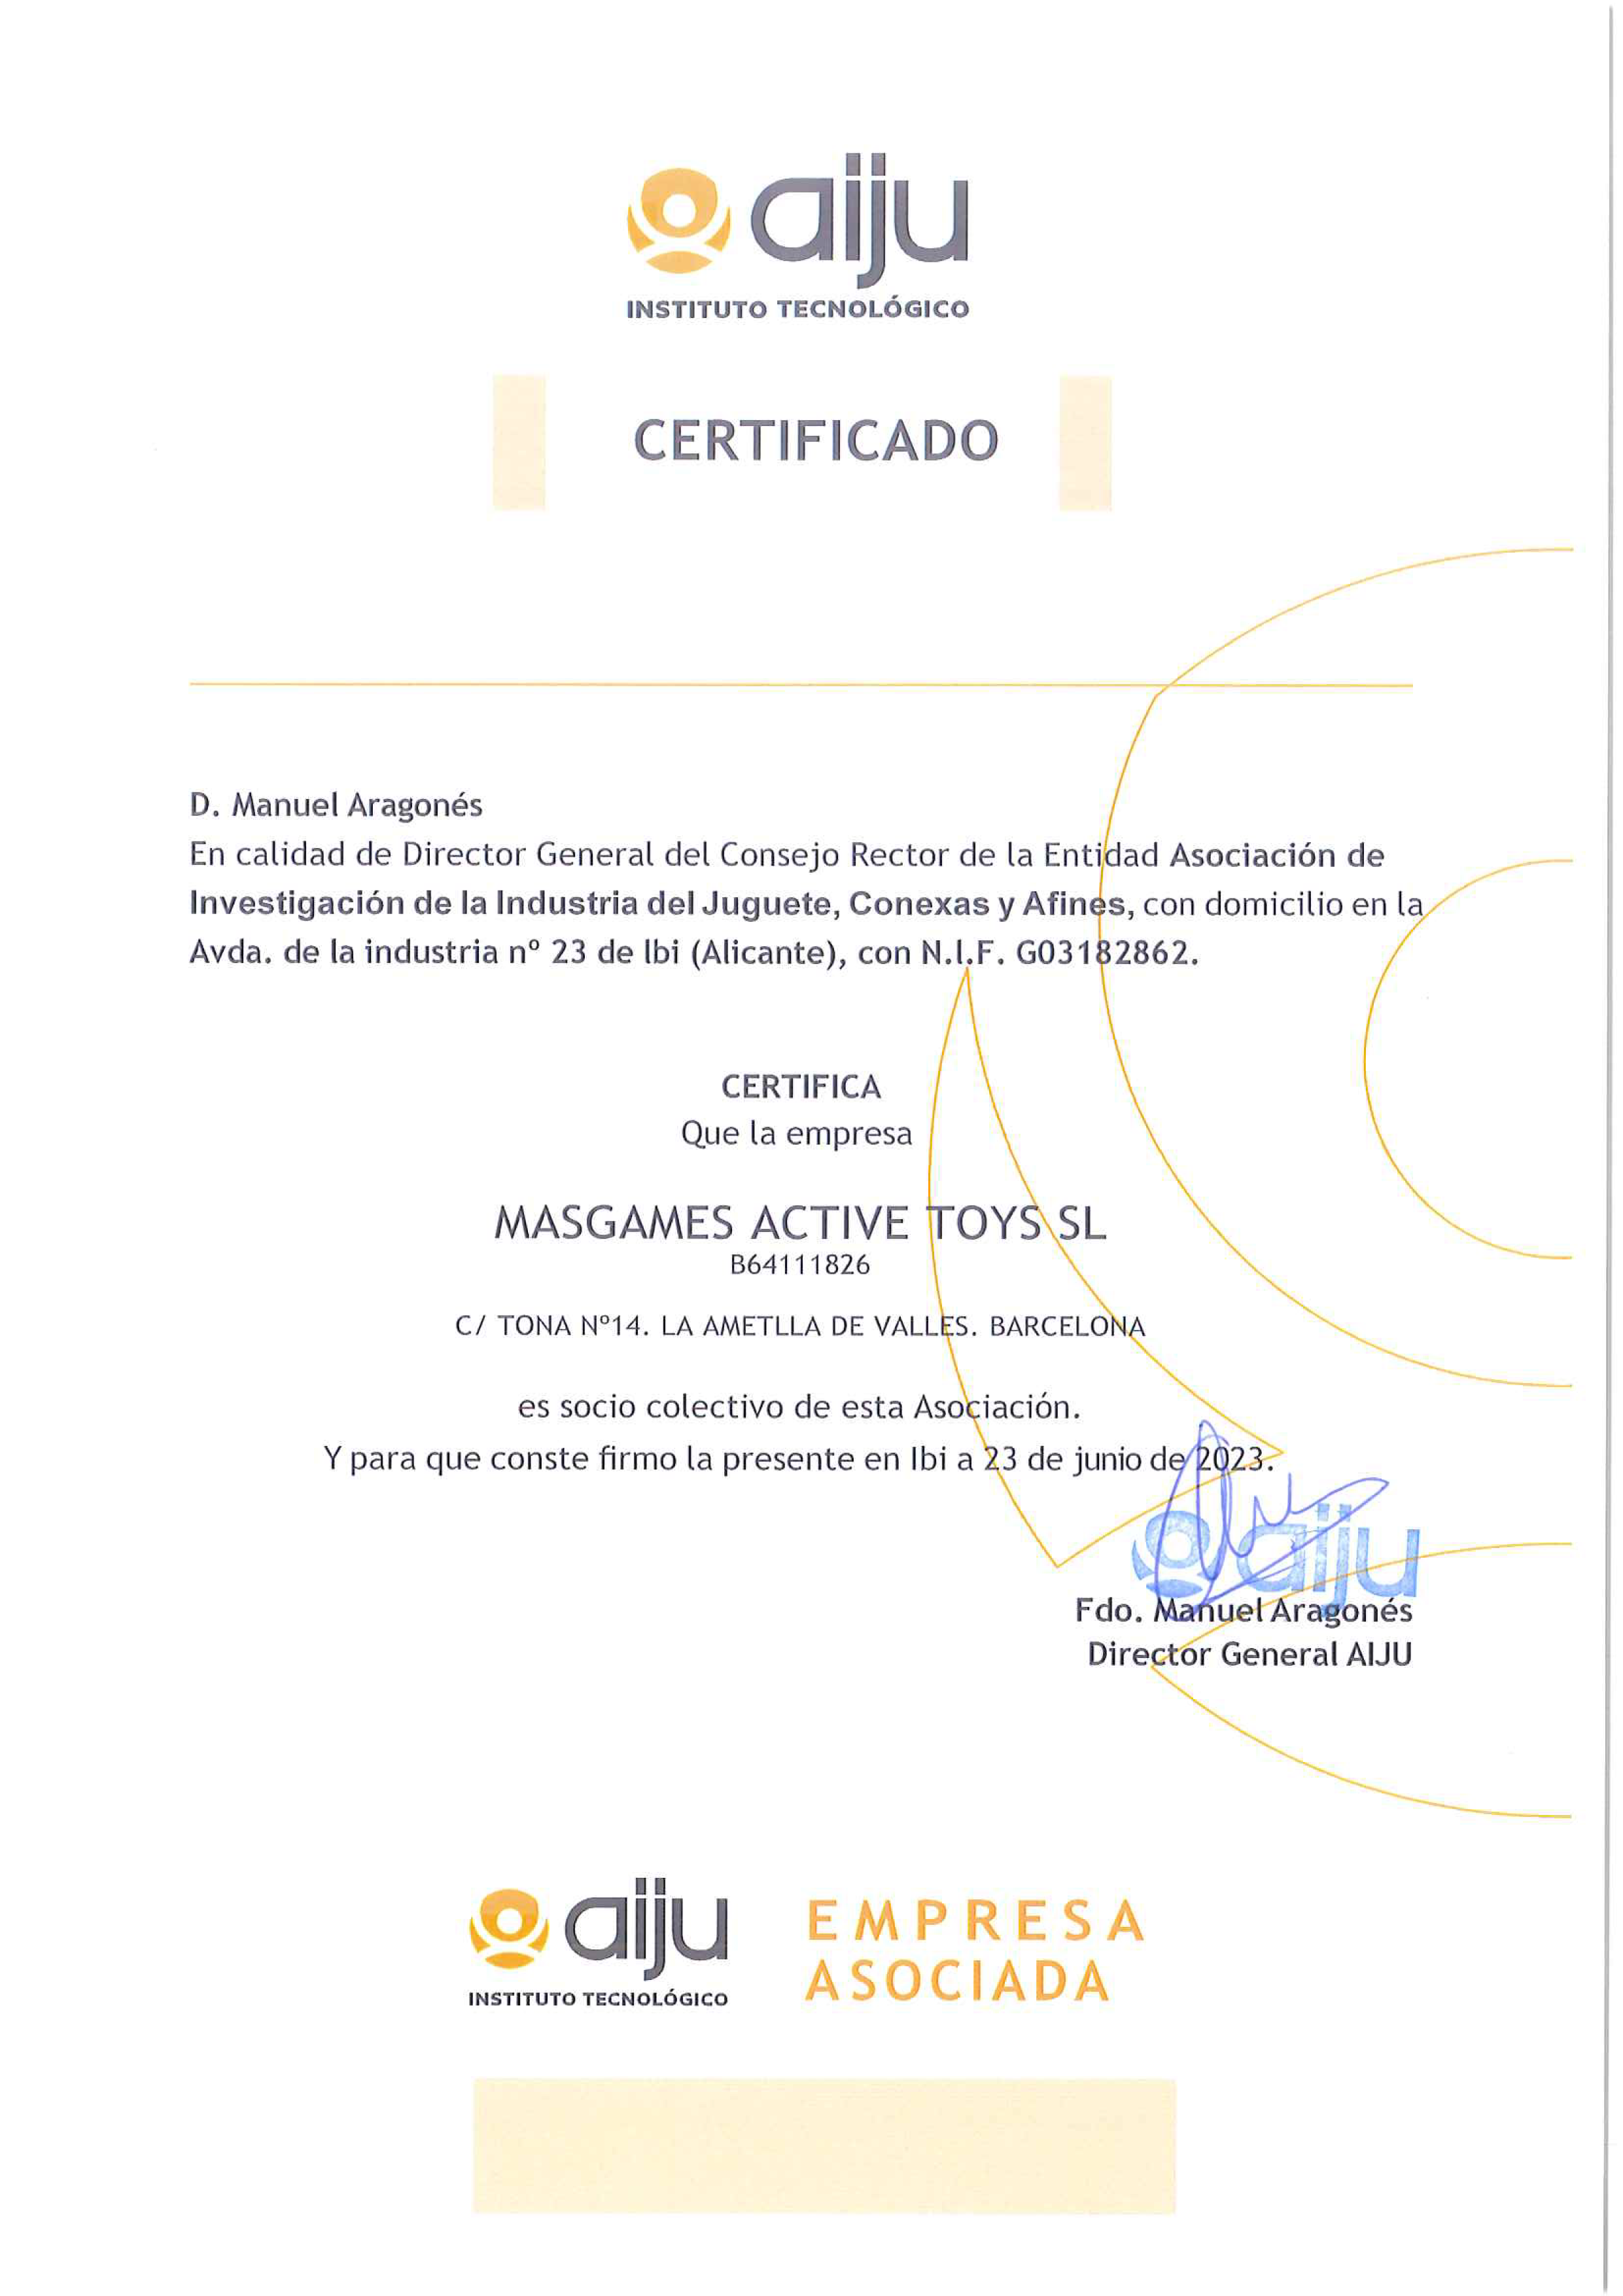 AIJU Certificate